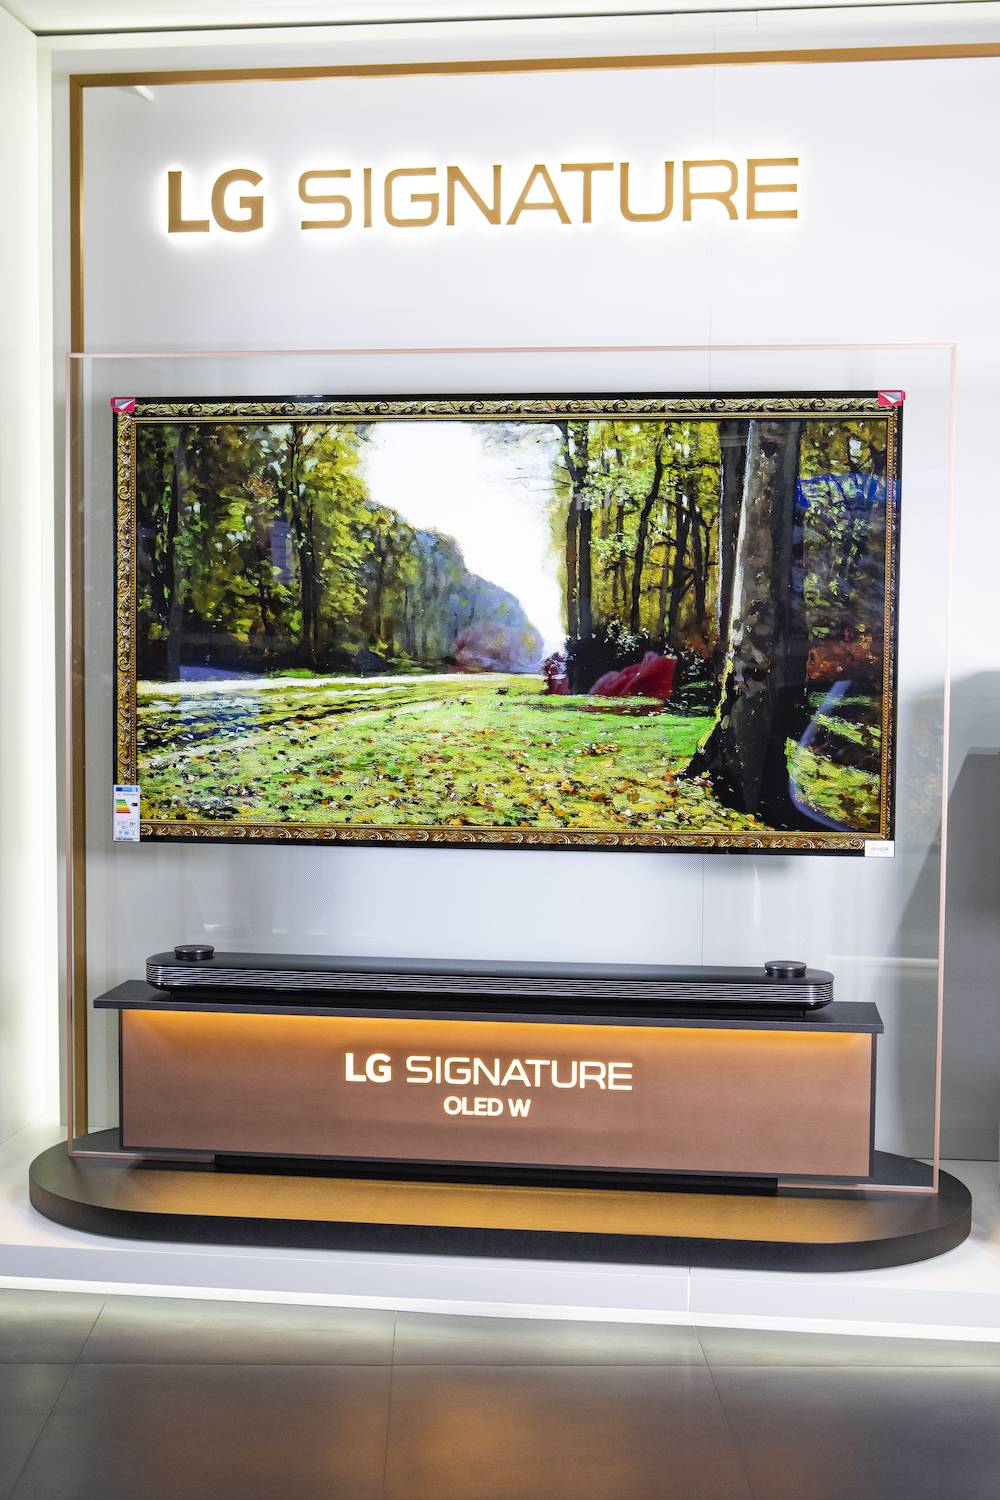 Premiera nowych produktów z serii LG Signature (Fot. materiały prasowe)